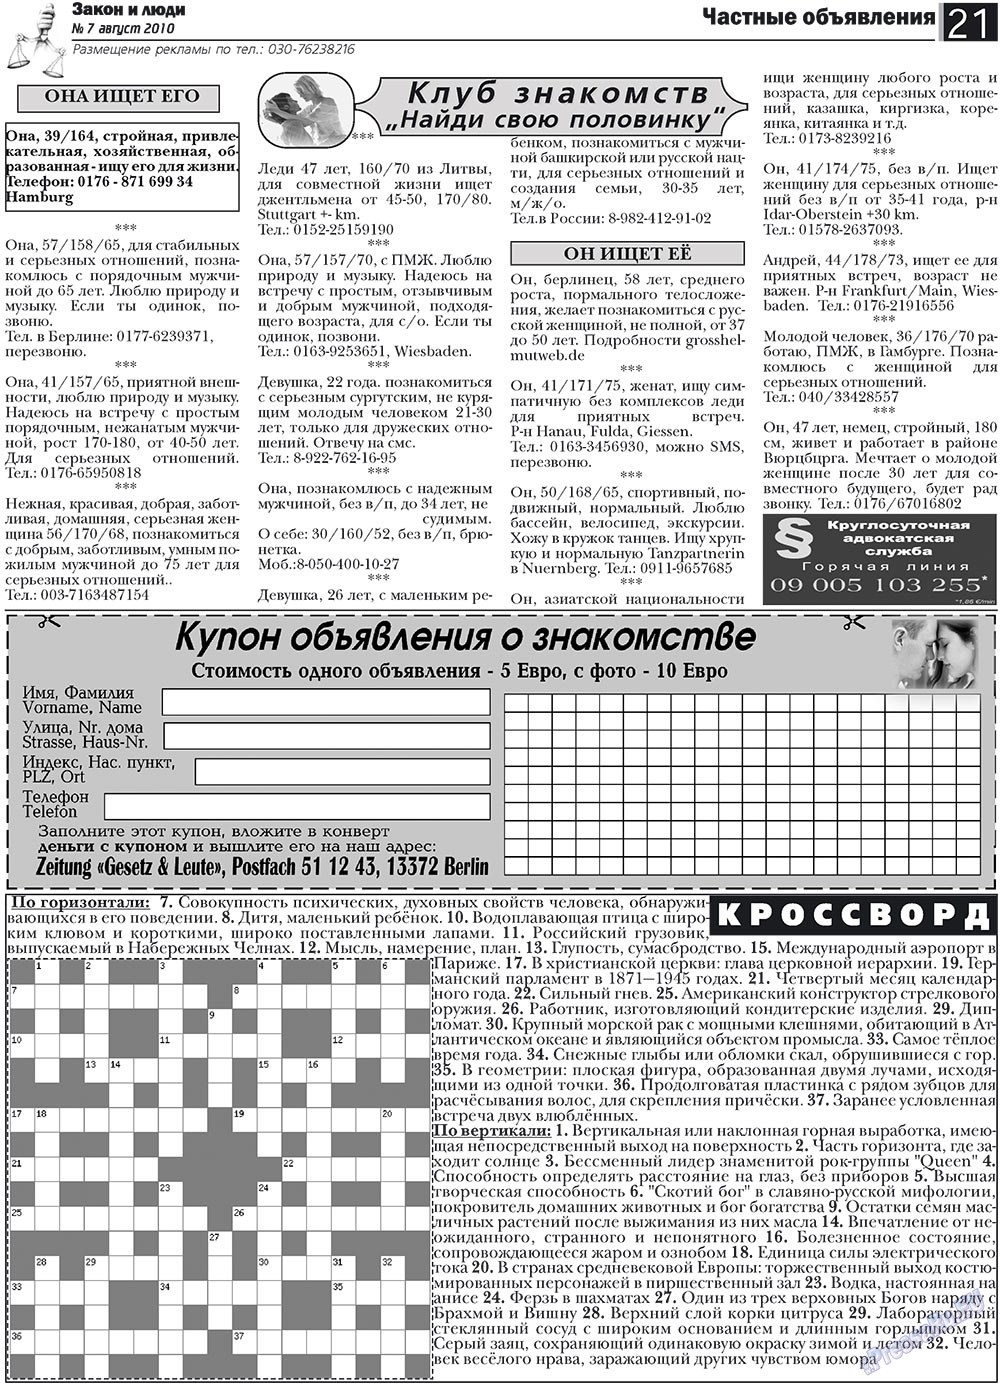 Закон и люди, газета. 2010 №7 стр.21